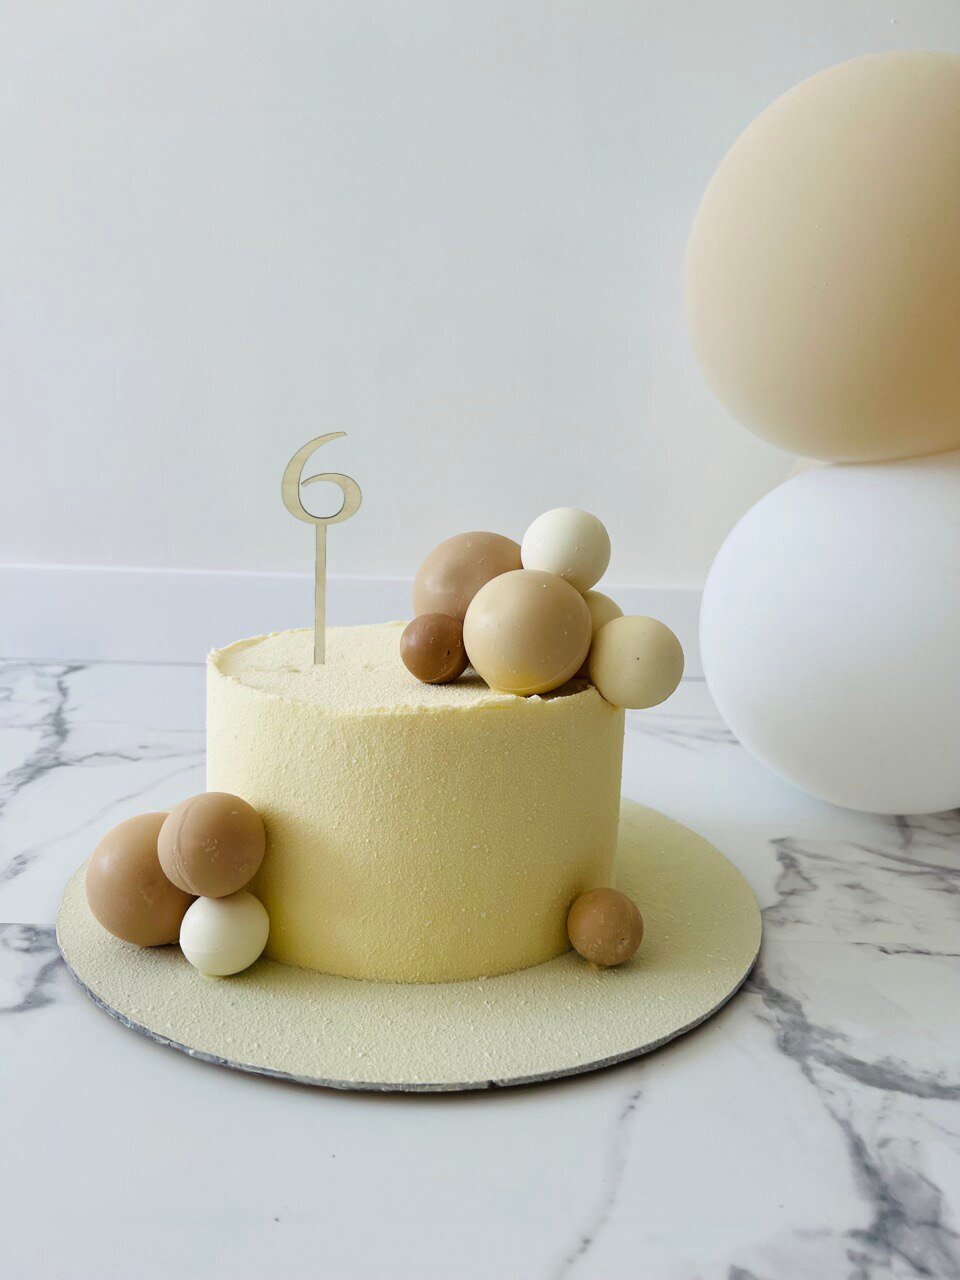 Топпер для торта и цветов 6 лет, декор кондитерский, Happy Birthday